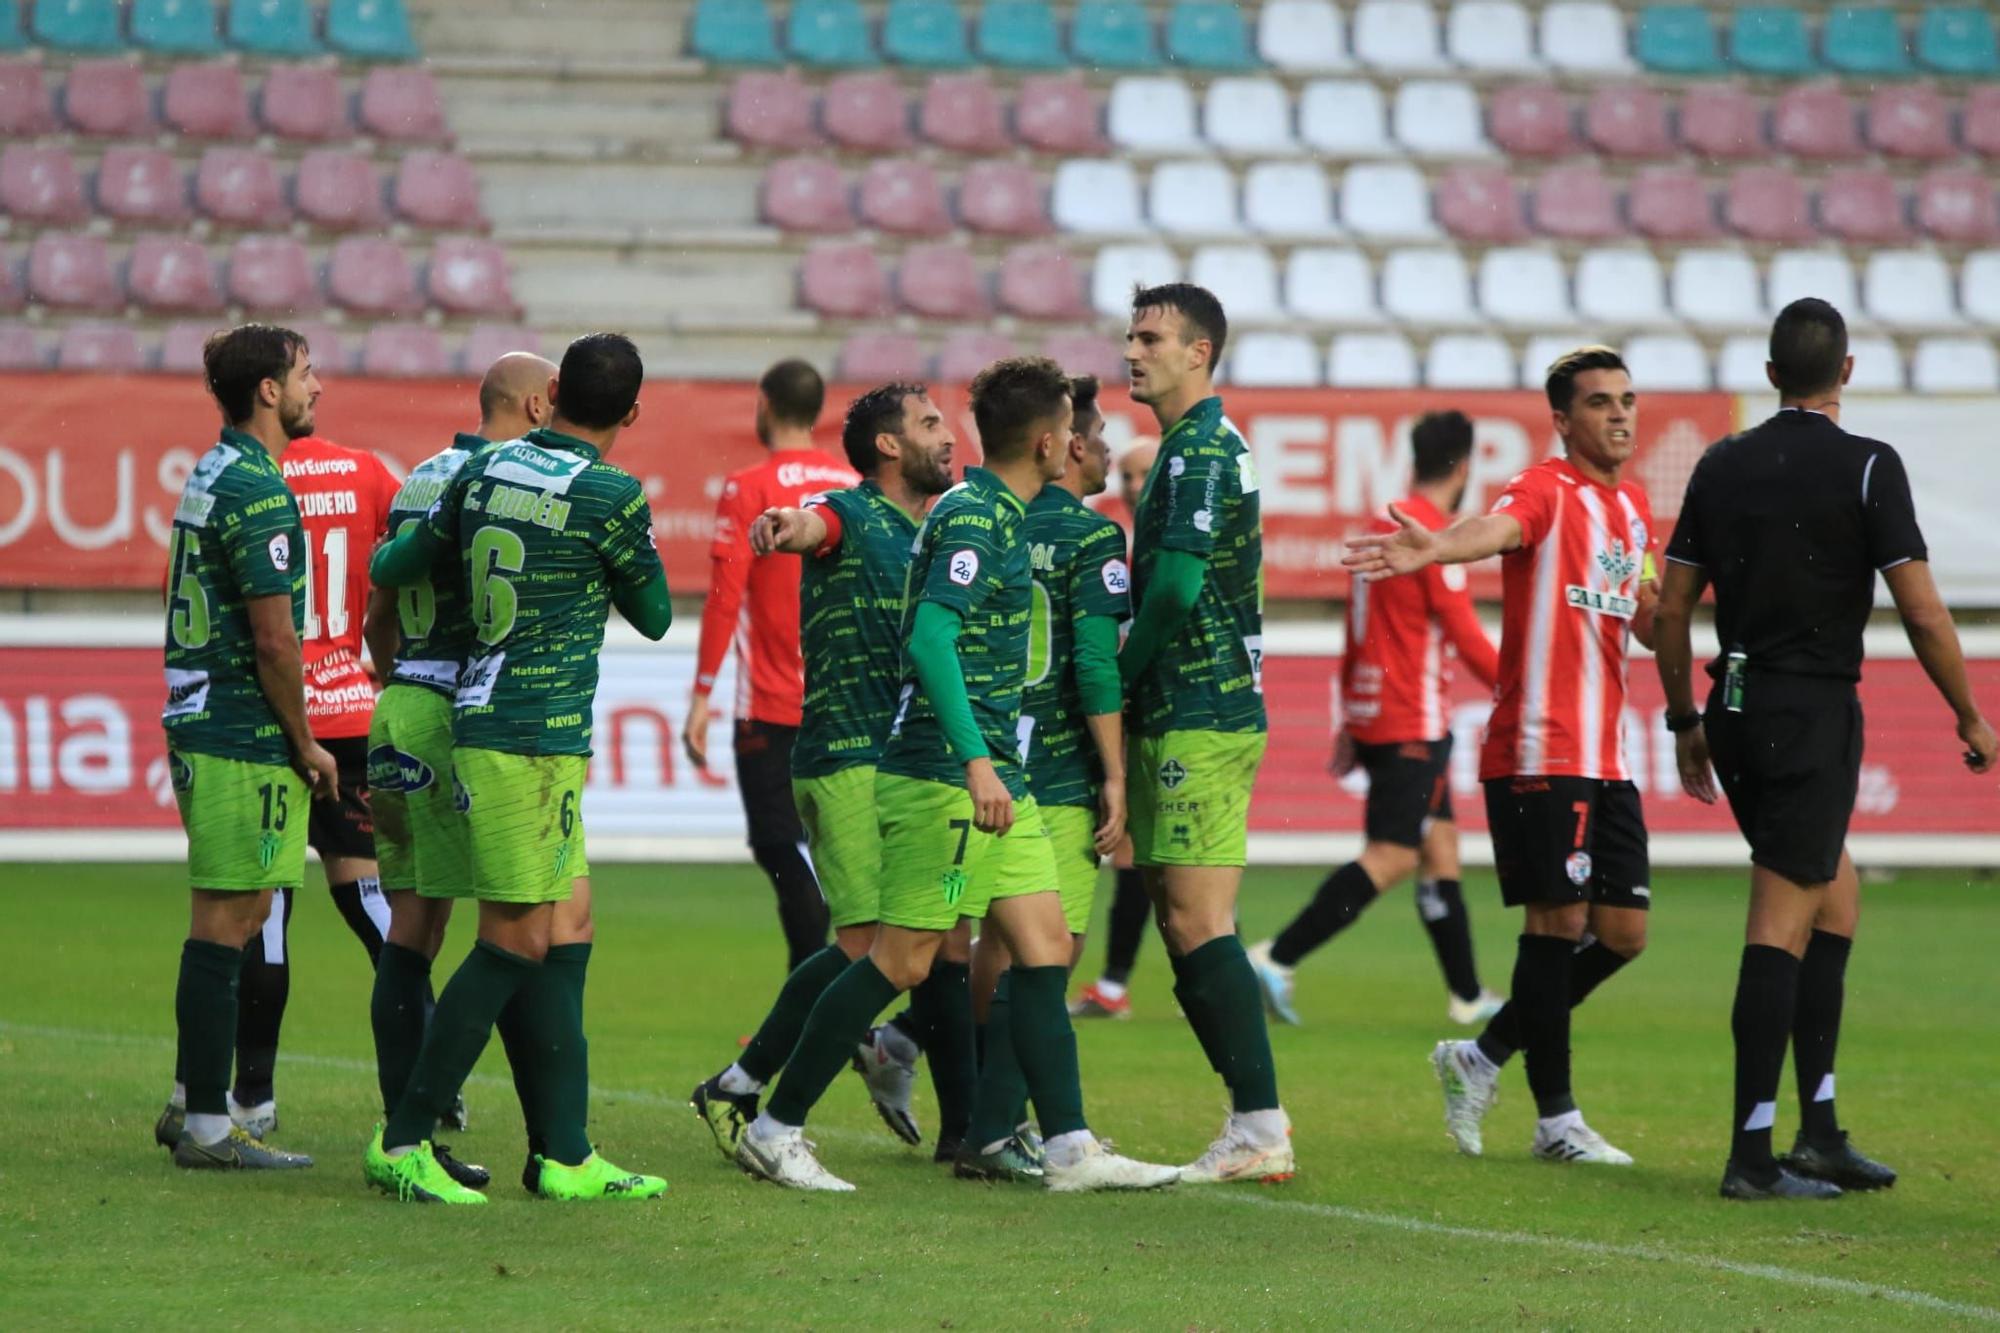 El Zamora CF empata con diez jugadores frente al Guijuelo (2-2)